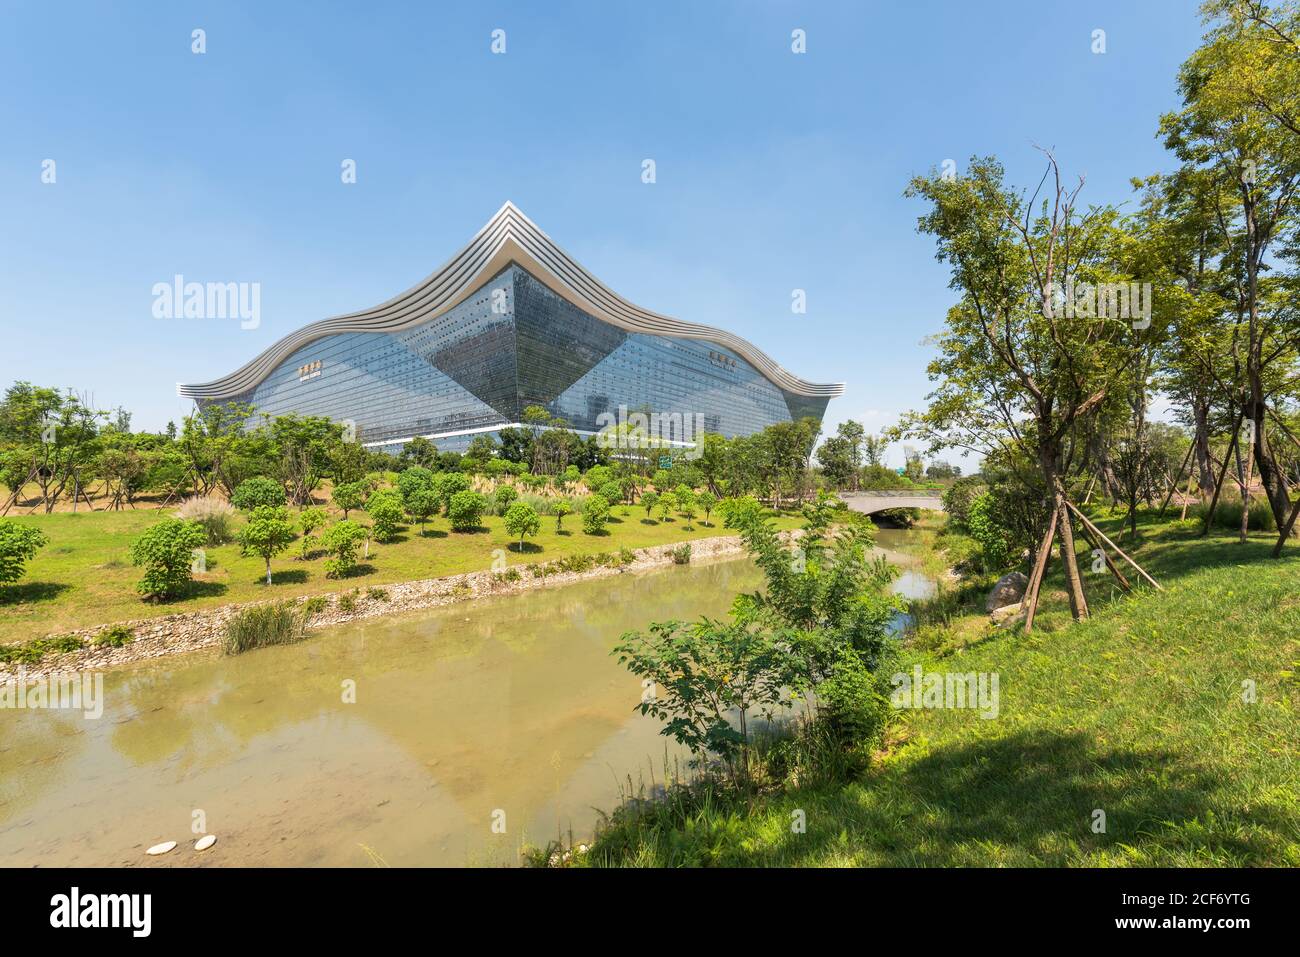 Chengdu, provincia di Sichuan, Cina - 26 agosto 2020 : New Century Global Center vista edificio dal parco Guixi in una giornata di sole con cielo blu chiaro Foto Stock